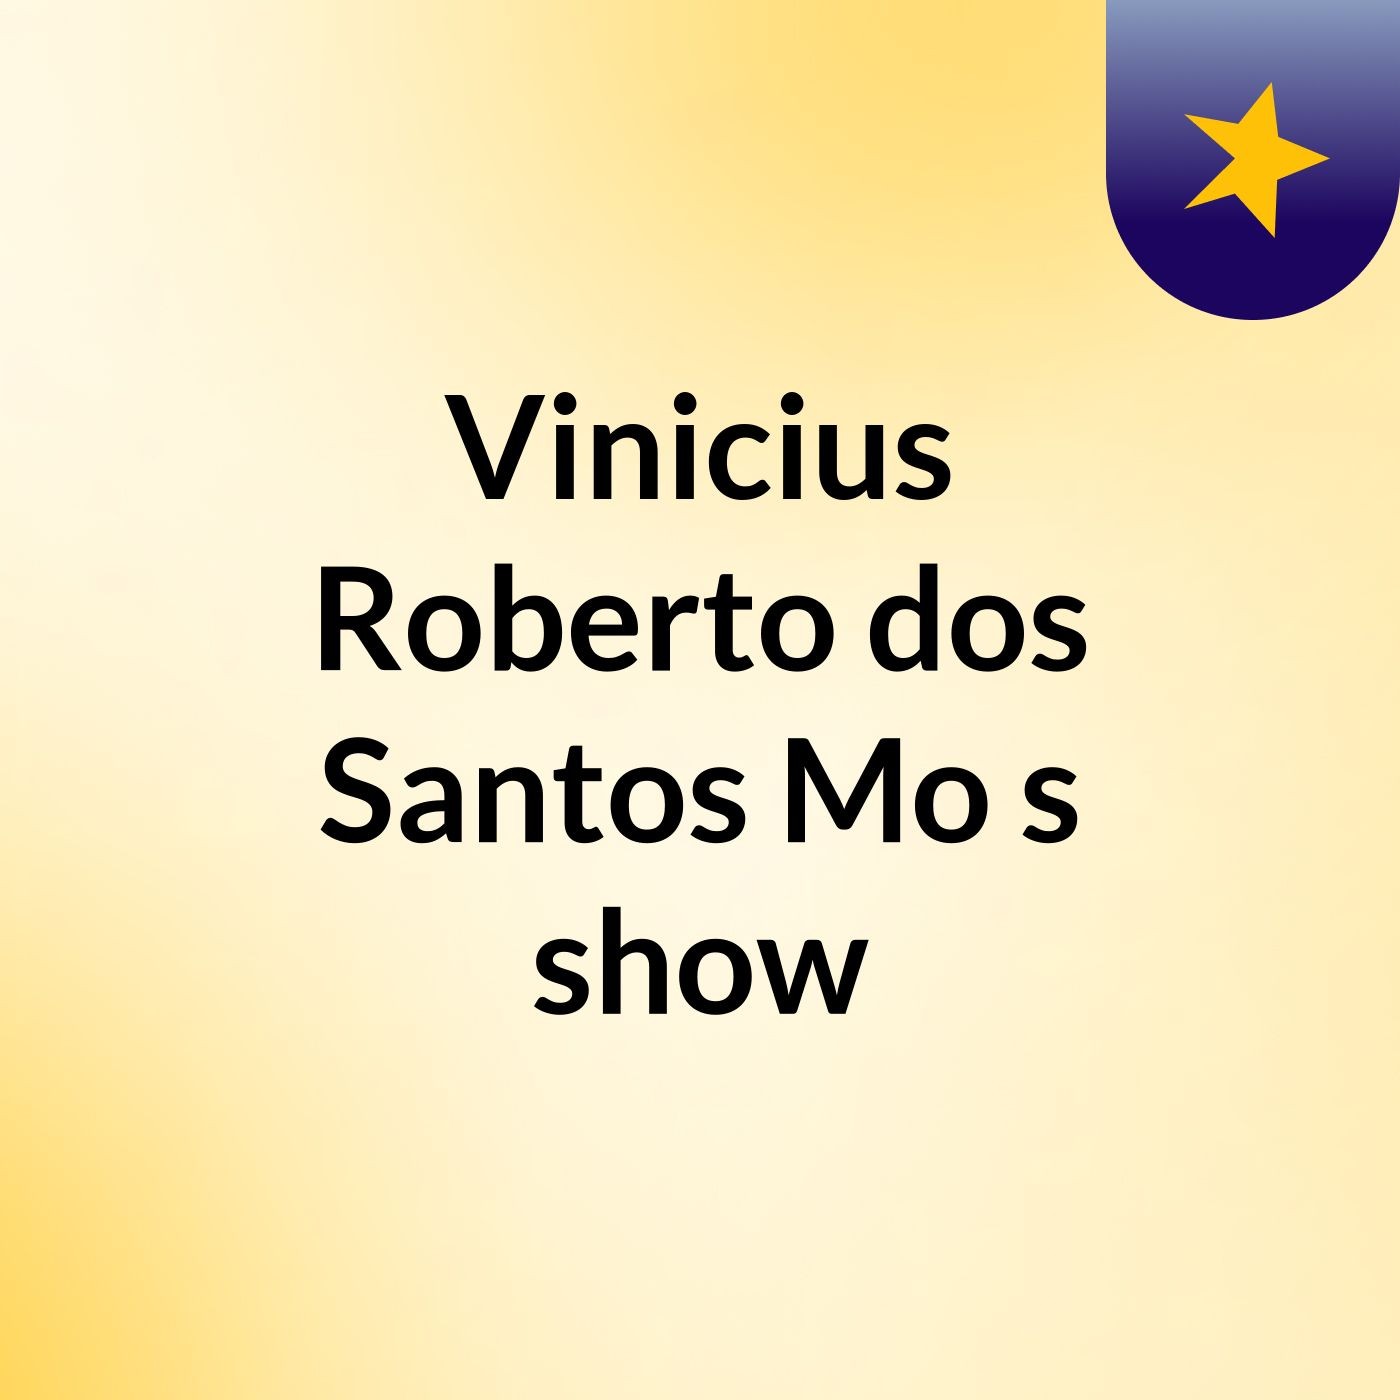 Vinicius Roberto dos Santos Mo's show